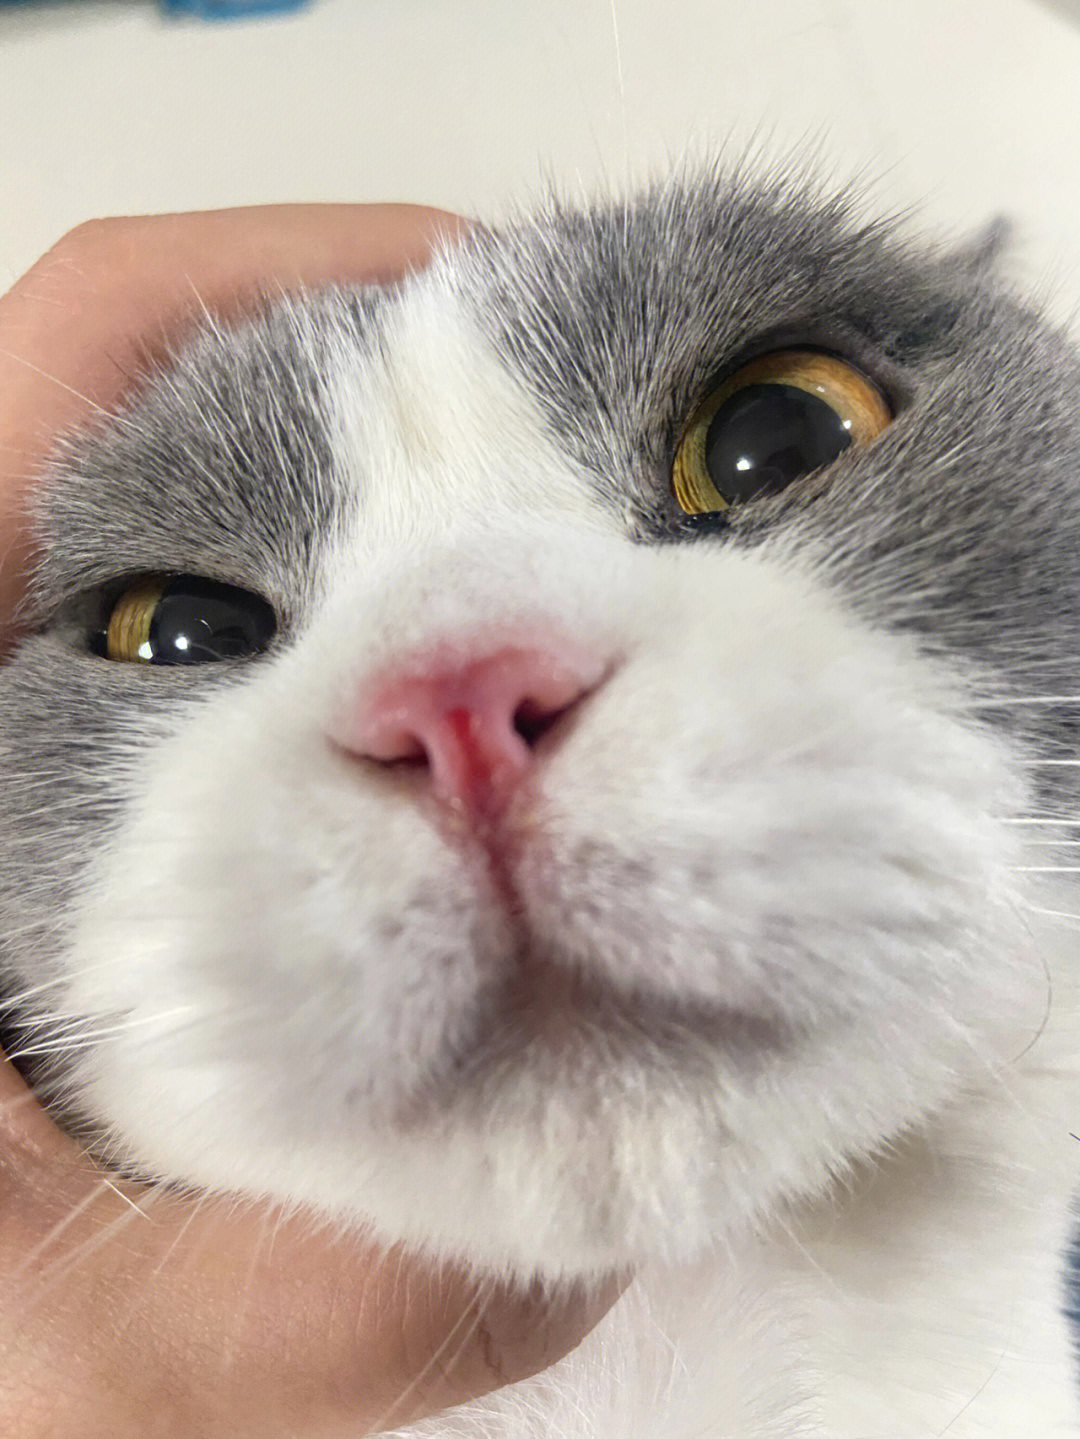 昨天发现猫咪鼻子坏了,那时候已经晚上了,今天带去宠物医院检查,做了